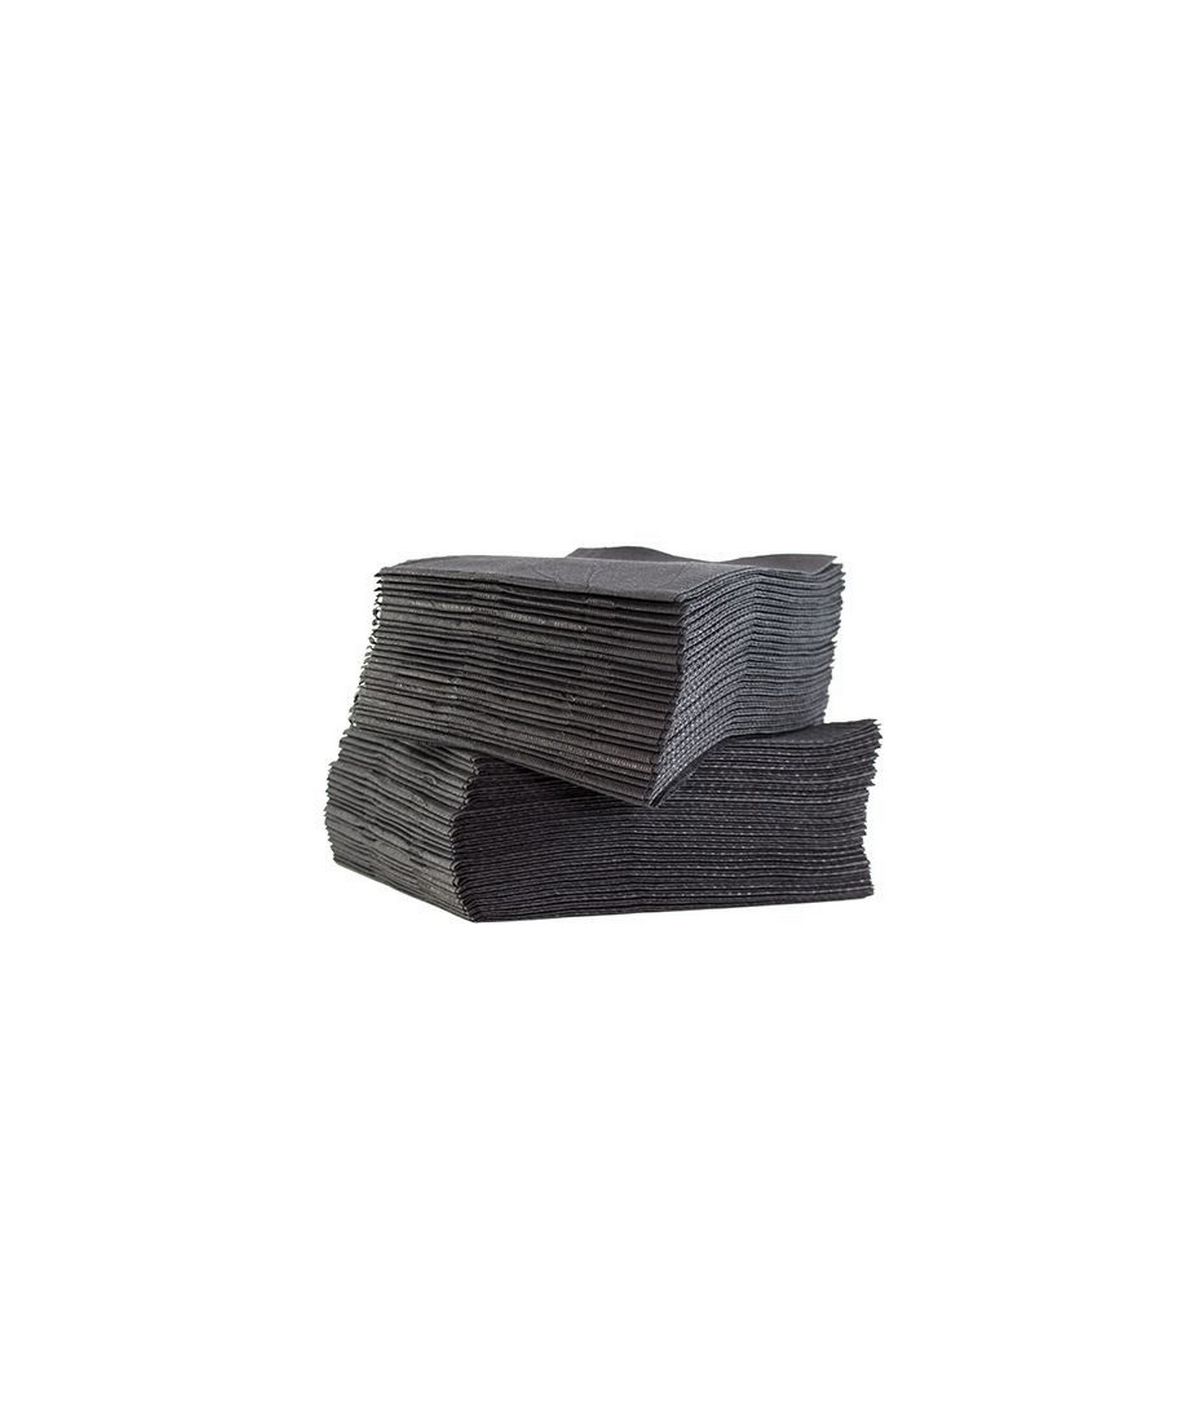 Serviettes plastifiées noires - 33 x 48 cm - Paquet de 125